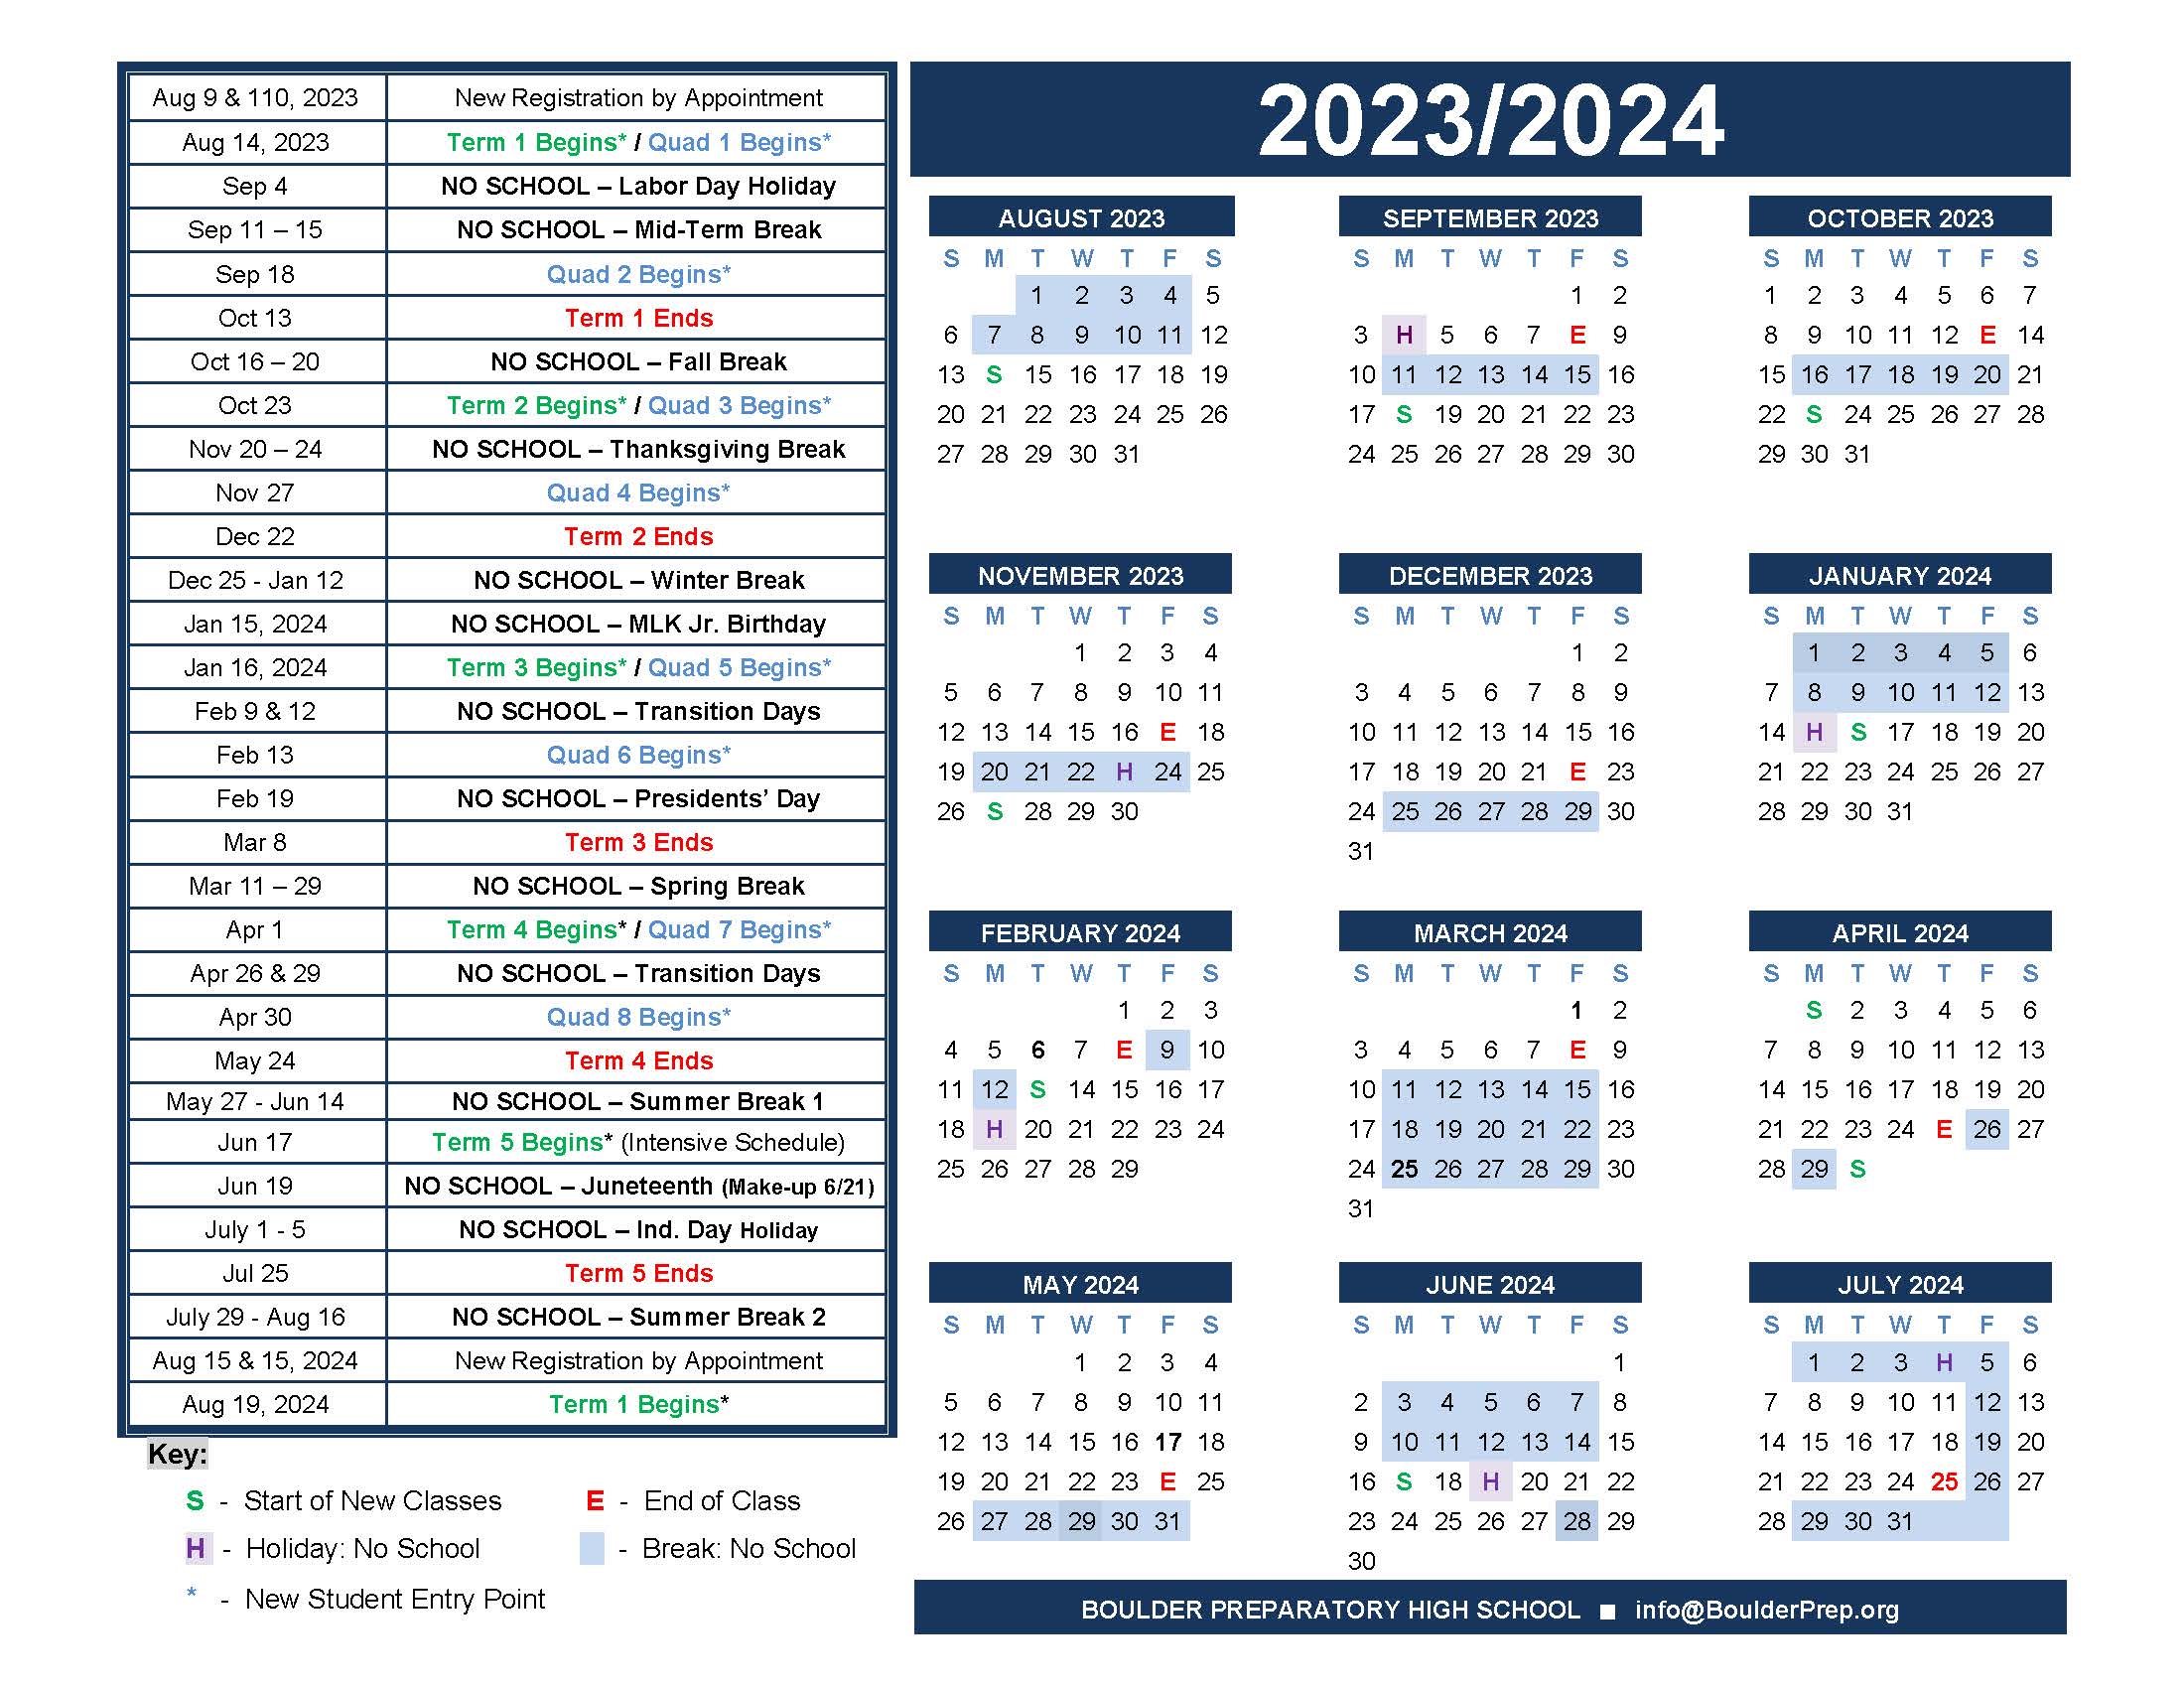 Cu Boulder Academic Calendar 2024 amalia janelle